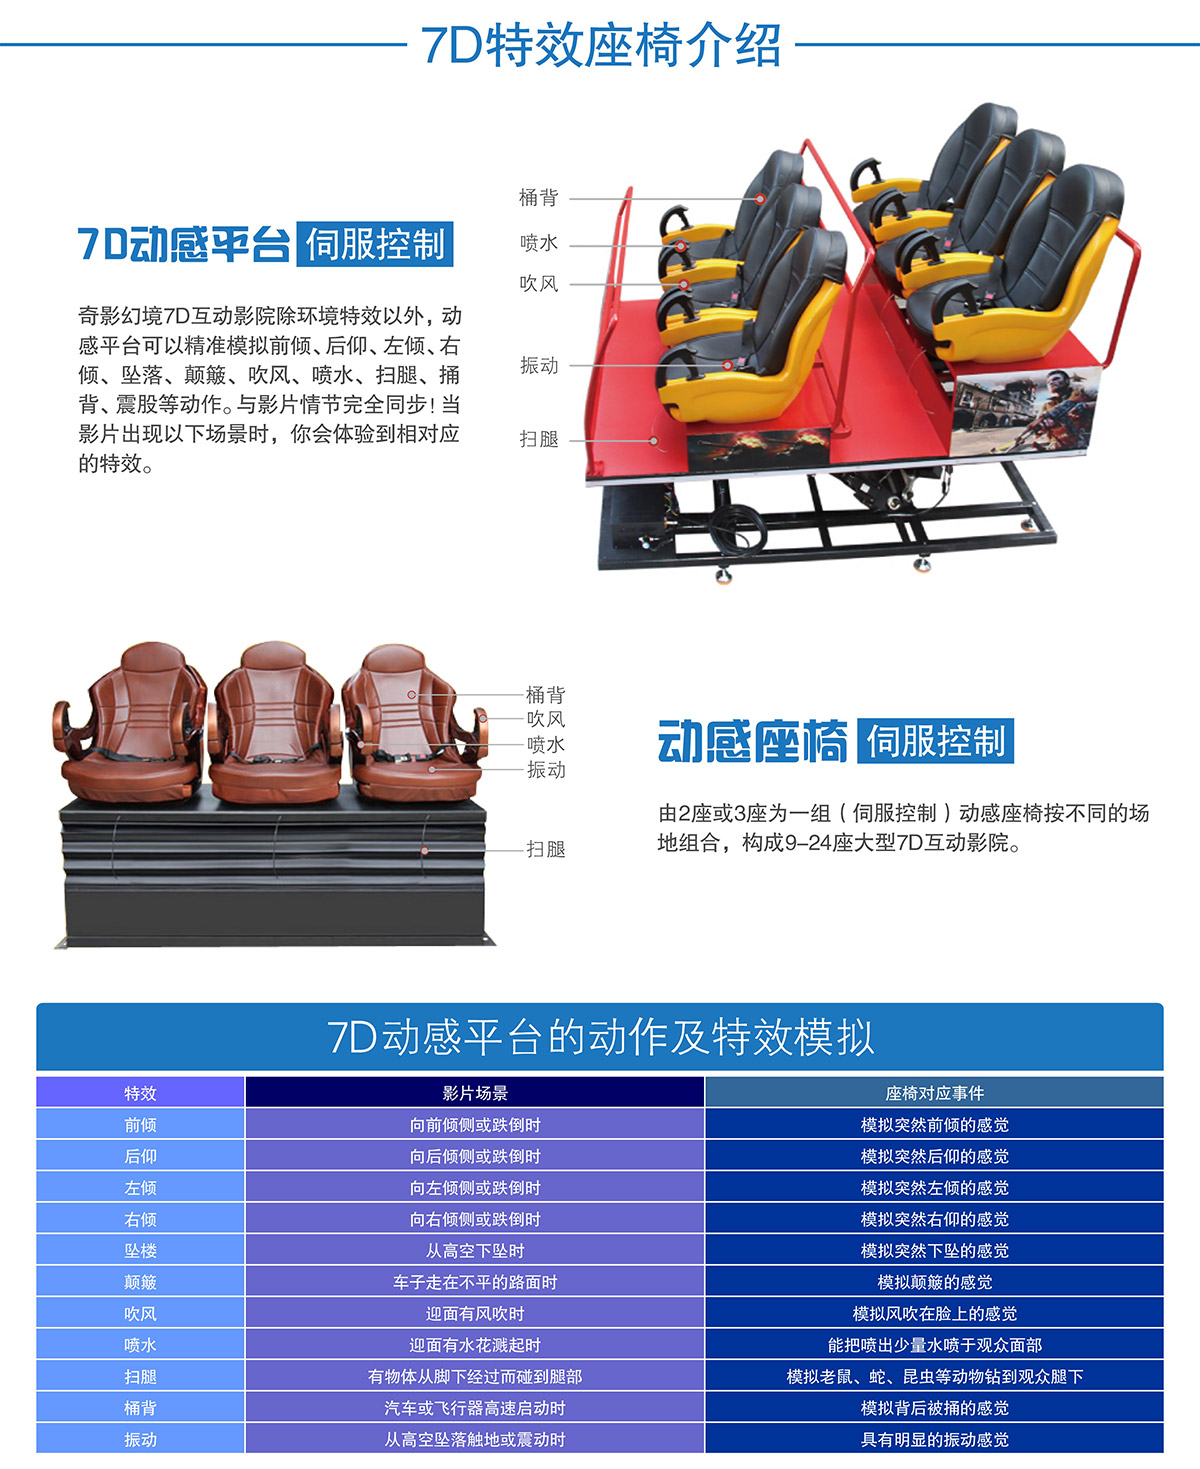 重庆7D特效座椅介绍.jpg